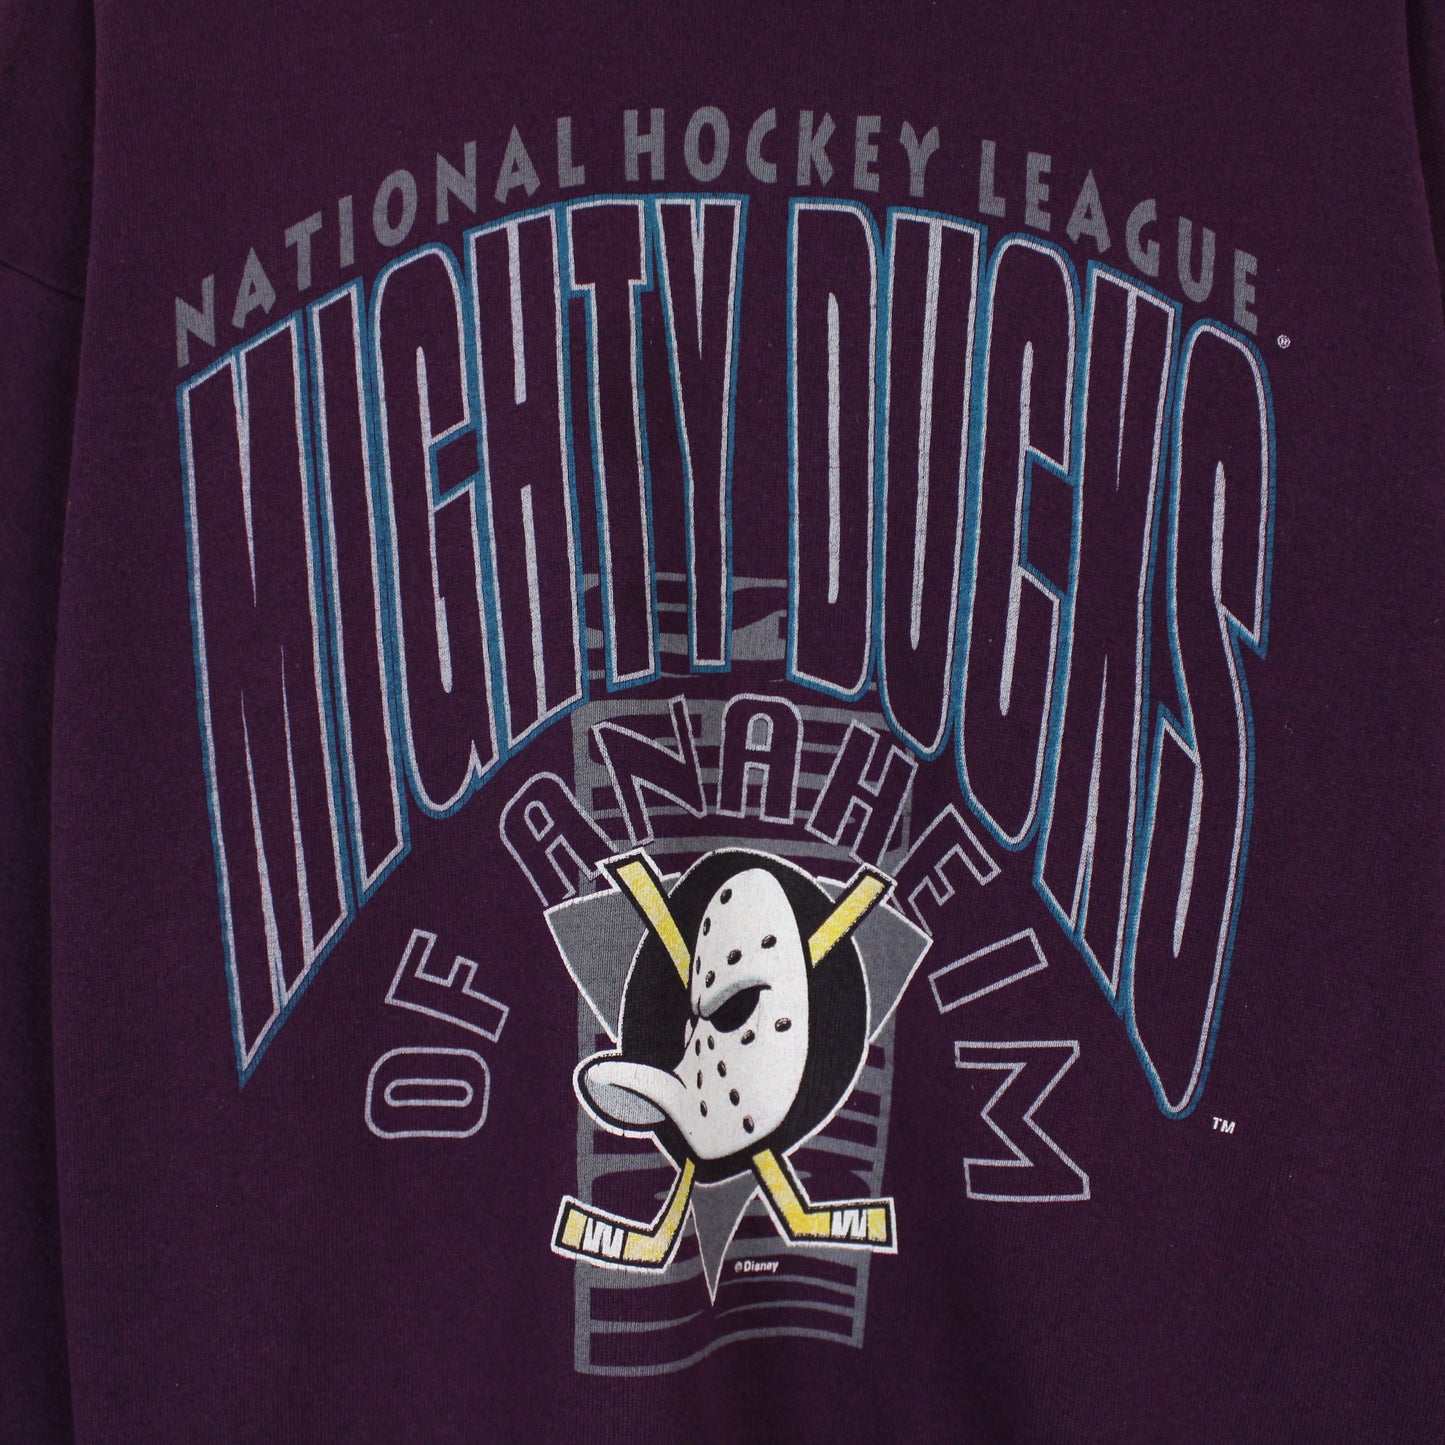 Vintage 1993 Anaheim Mighty Ducks NHL Sweatshirt - XL